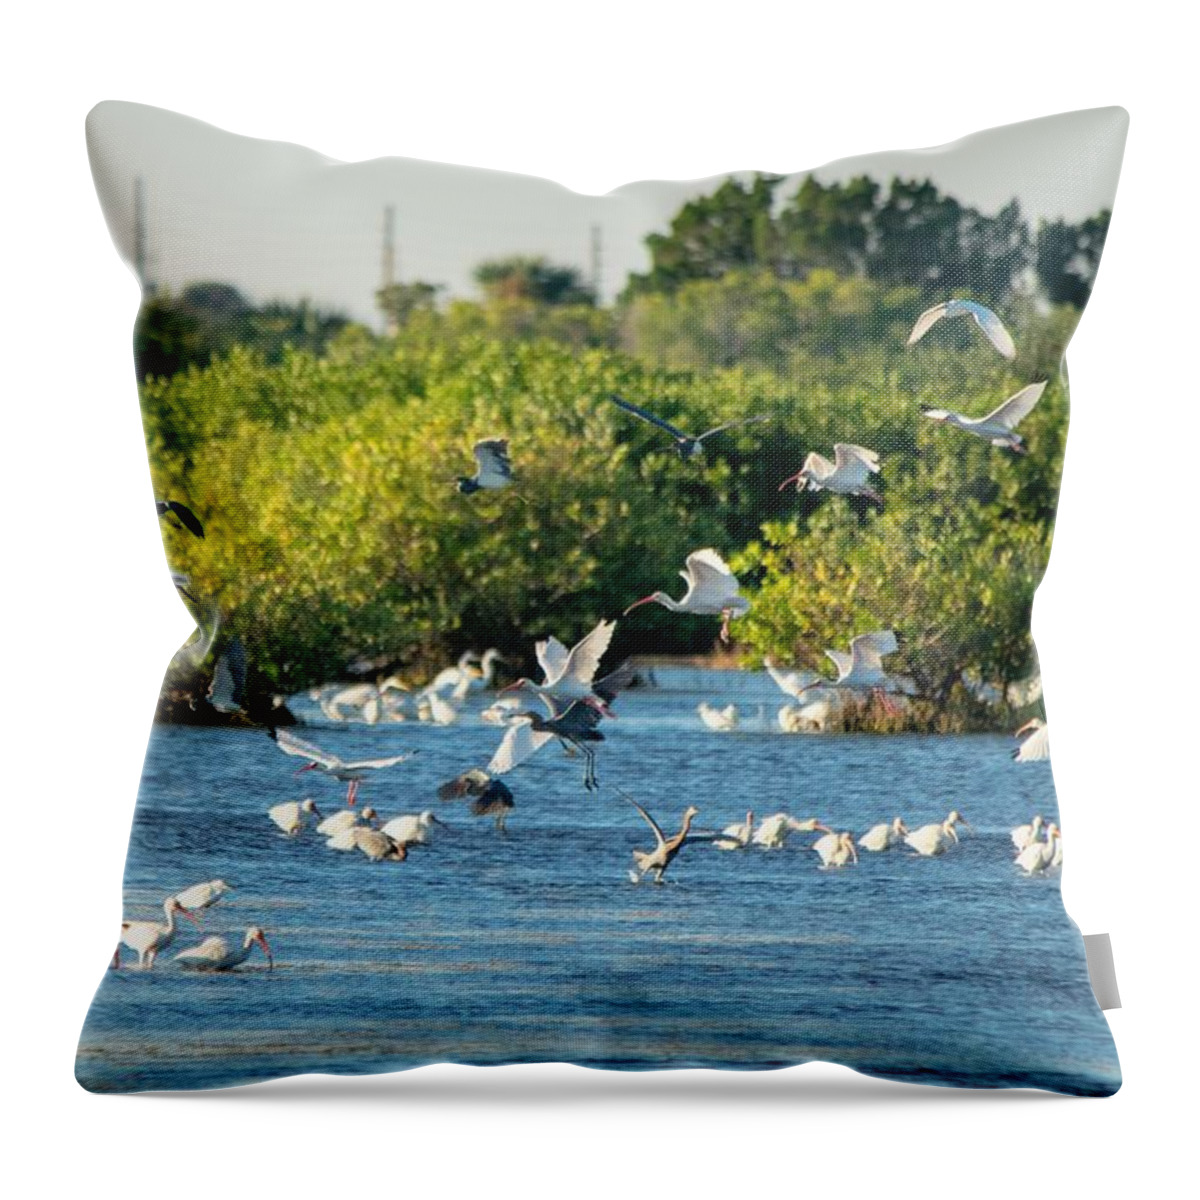 White Ibis Throw Pillow featuring the photograph White Ibis Flock - Merritt Island by Mary Ann Artz